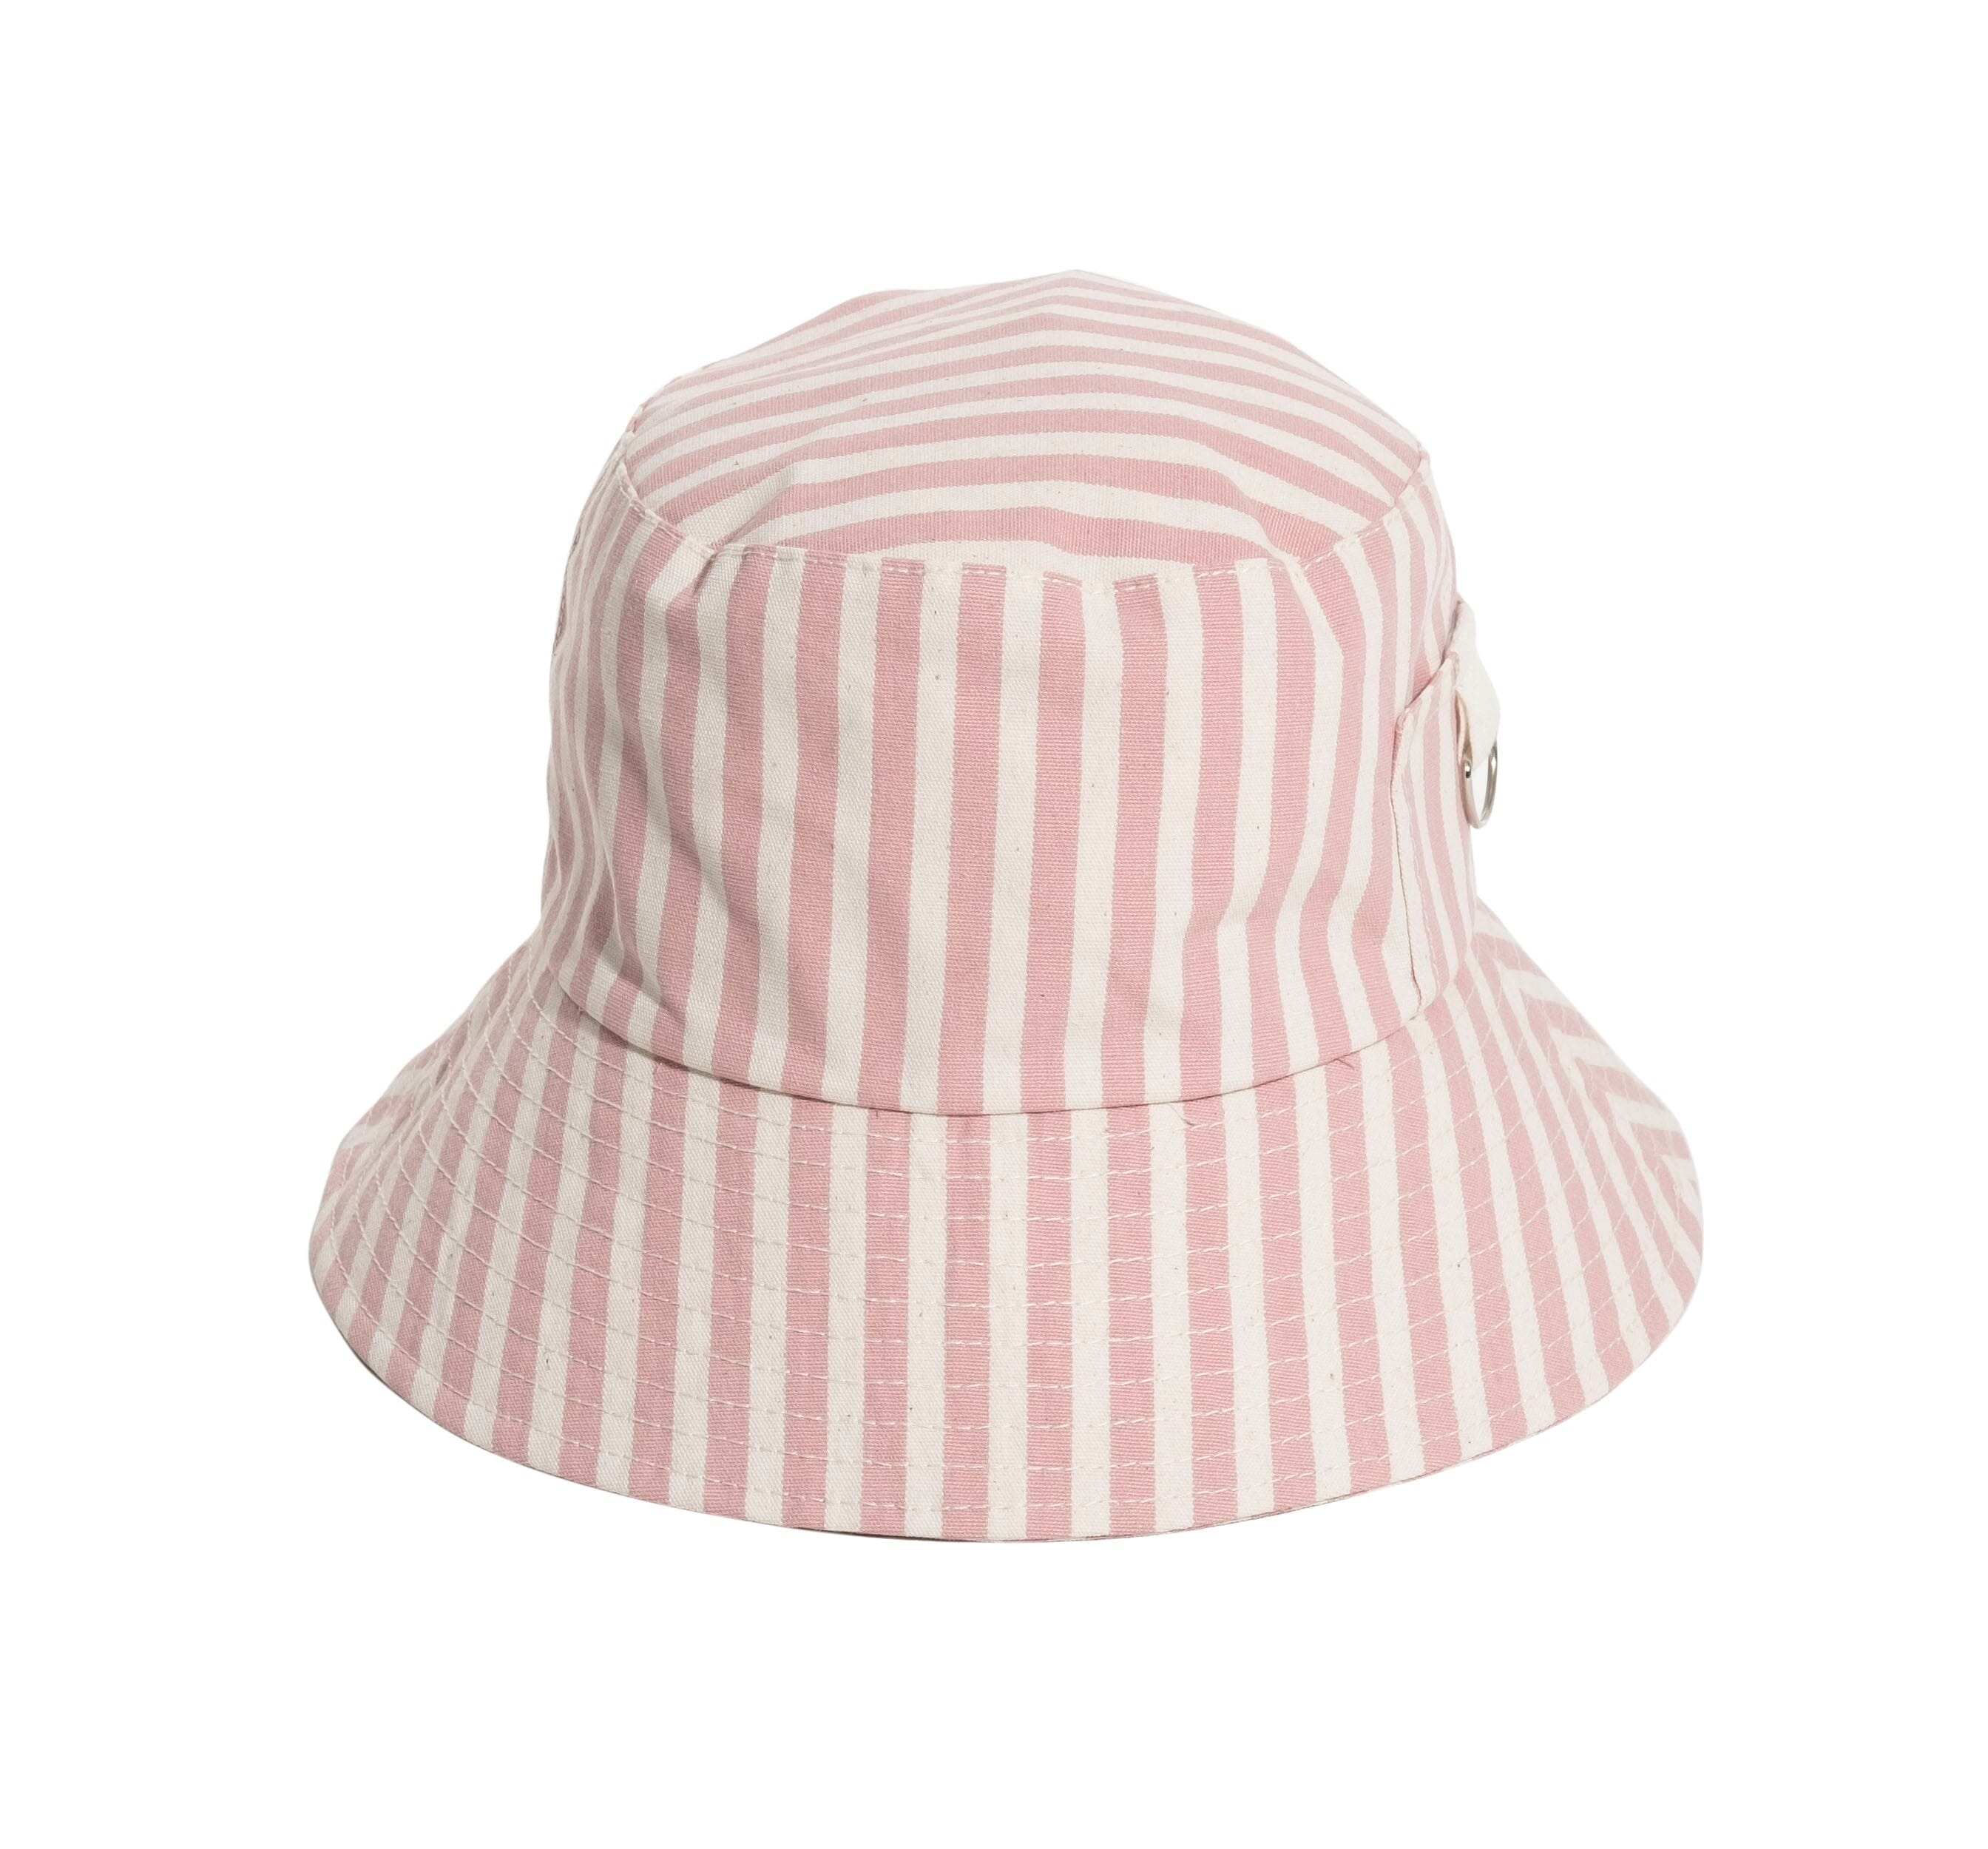 The Bucket Hat - Lauren's Pink Stripe Hats Business & Pleasure Co 